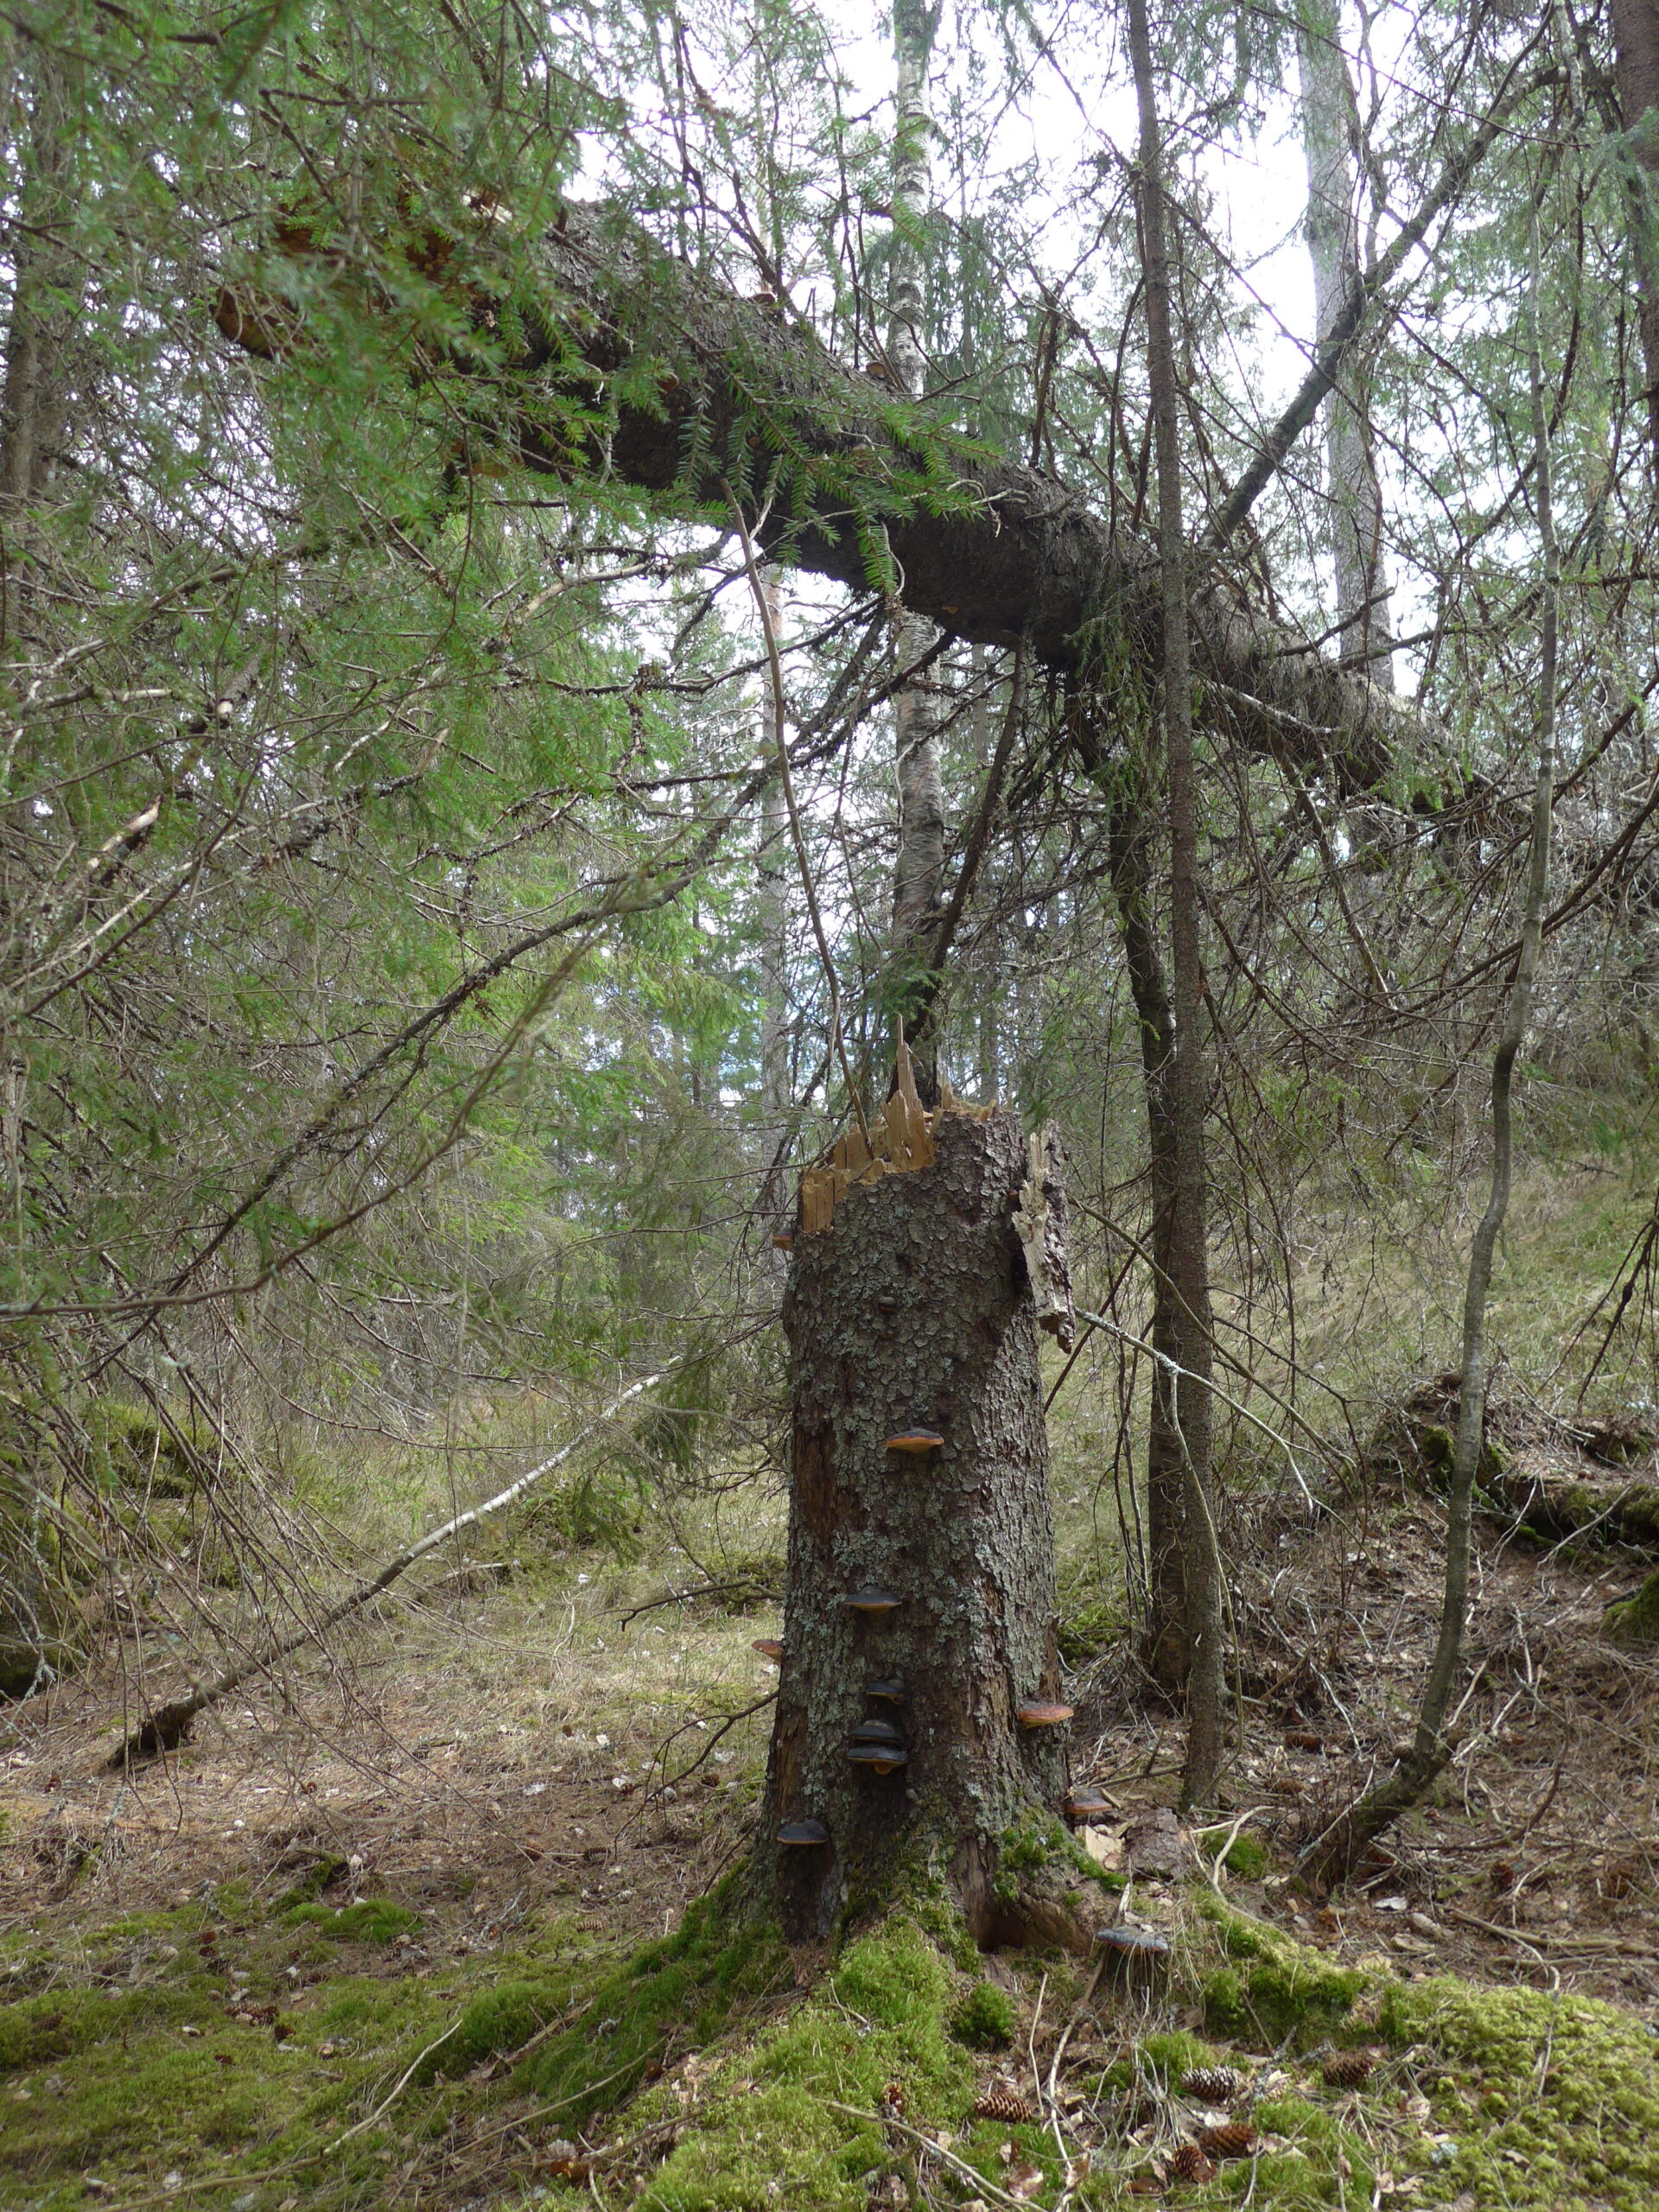 Kommer det et kraftig vindkast, klarer ofte treet å holde seg fast med røttene, men stammen kan knekke en meter eller to over bakken.